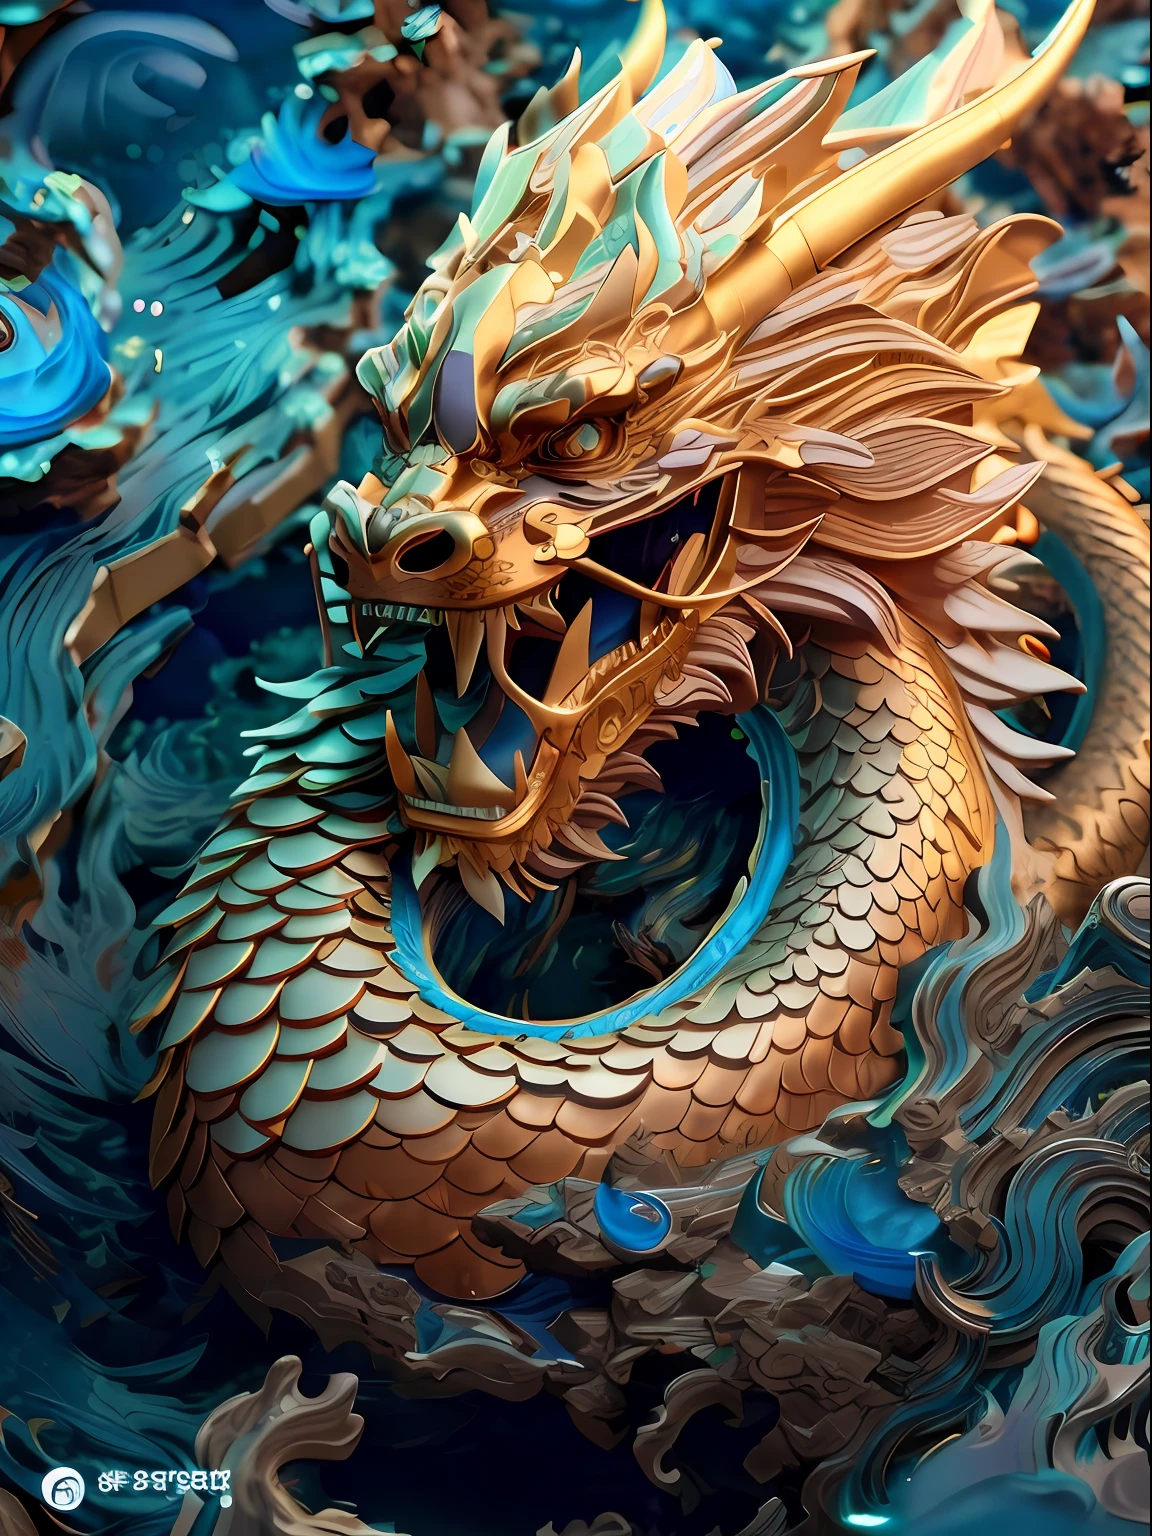 Uma estátua de dragão em um fundo azul，aceno, fantasia de dragão chinês ciano, arte 3d digital detalhada, intrincado estilo cgi de anime ornamentado, dragão chinês suave, Dragão chinês, Arte digital altamente detalhada, arte digital altamente detalhada, arte digital ultra detalhada, Arte detalhada de alta qualidade em 8K, Dragão dourado, arte conceitual do dragão chinês, majestoso dragão japonês, linguagem de design de dragão